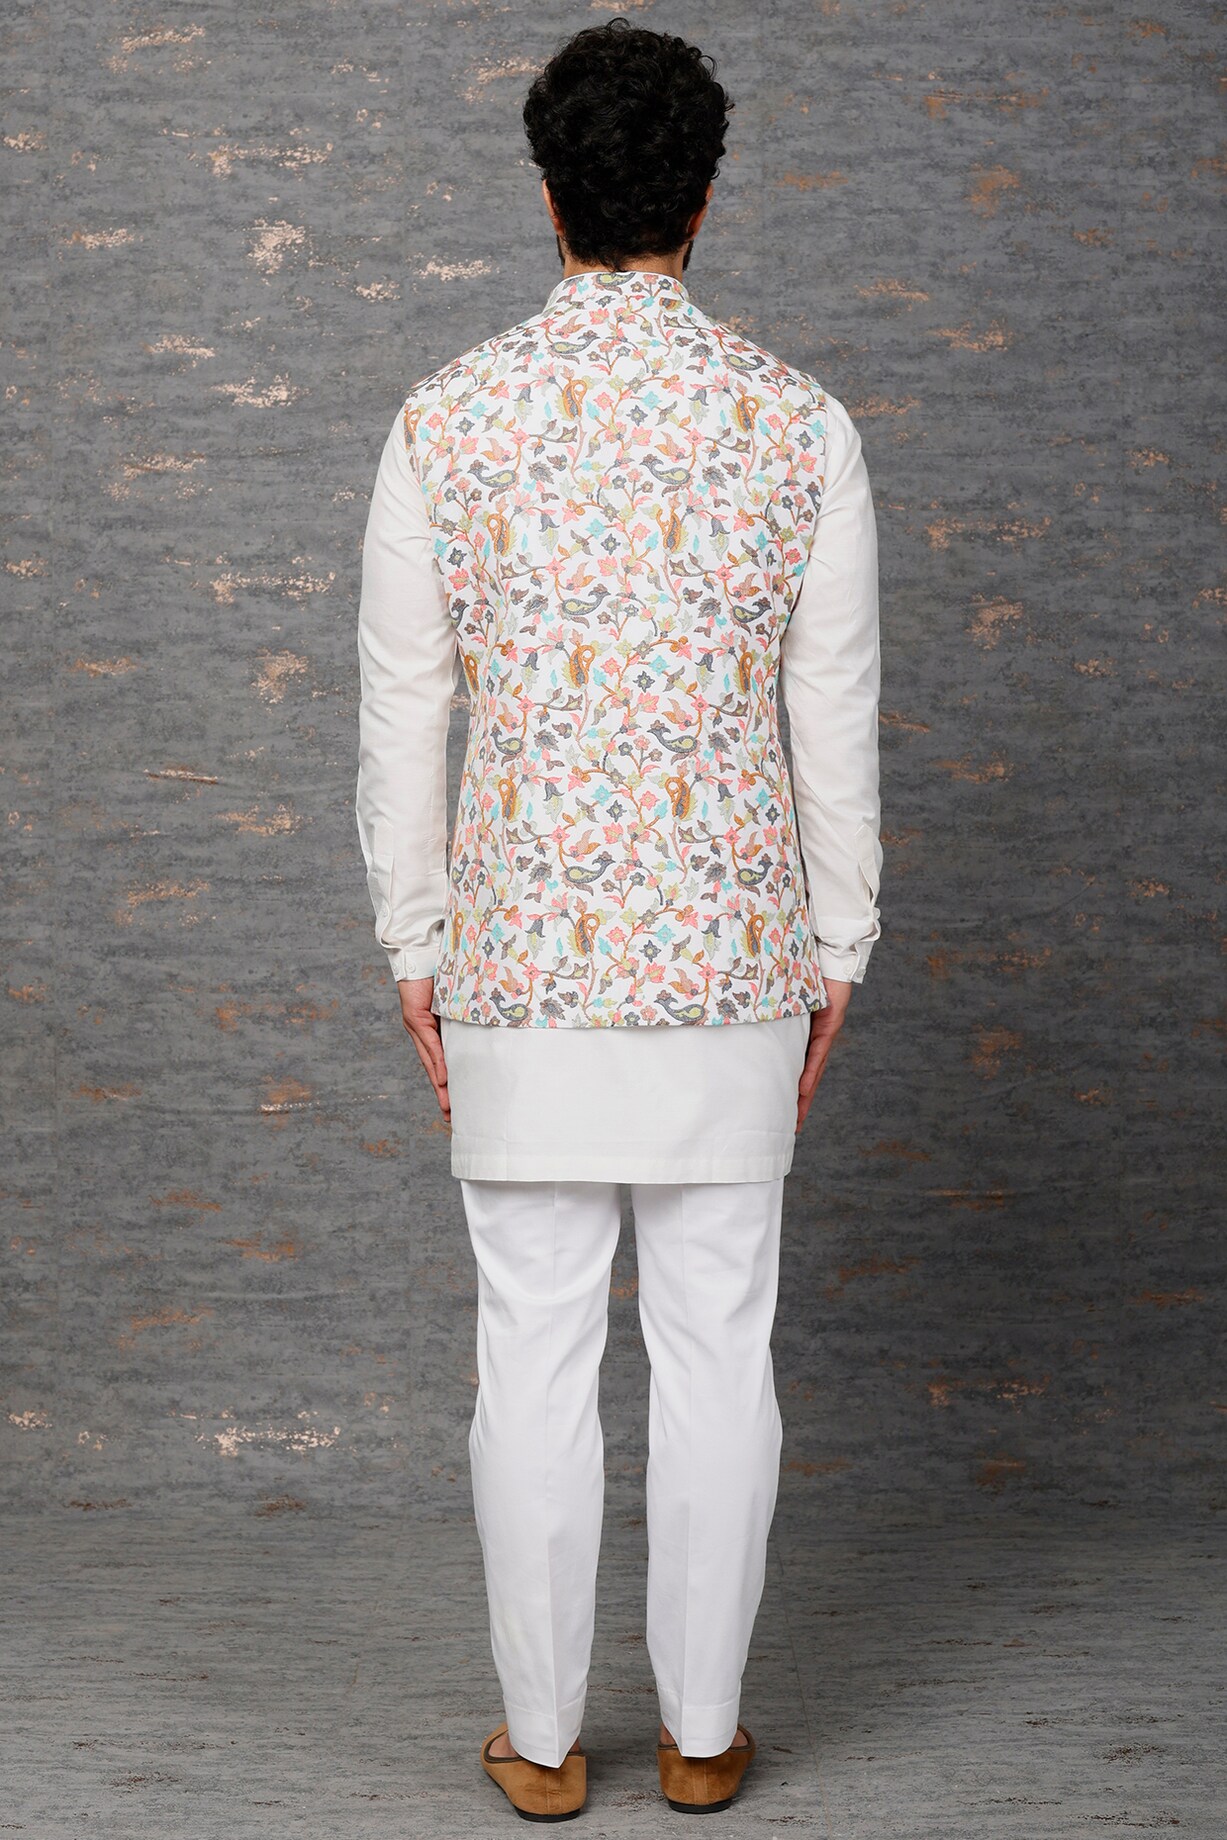 White Embellished Indowestern Set by Qbik Men